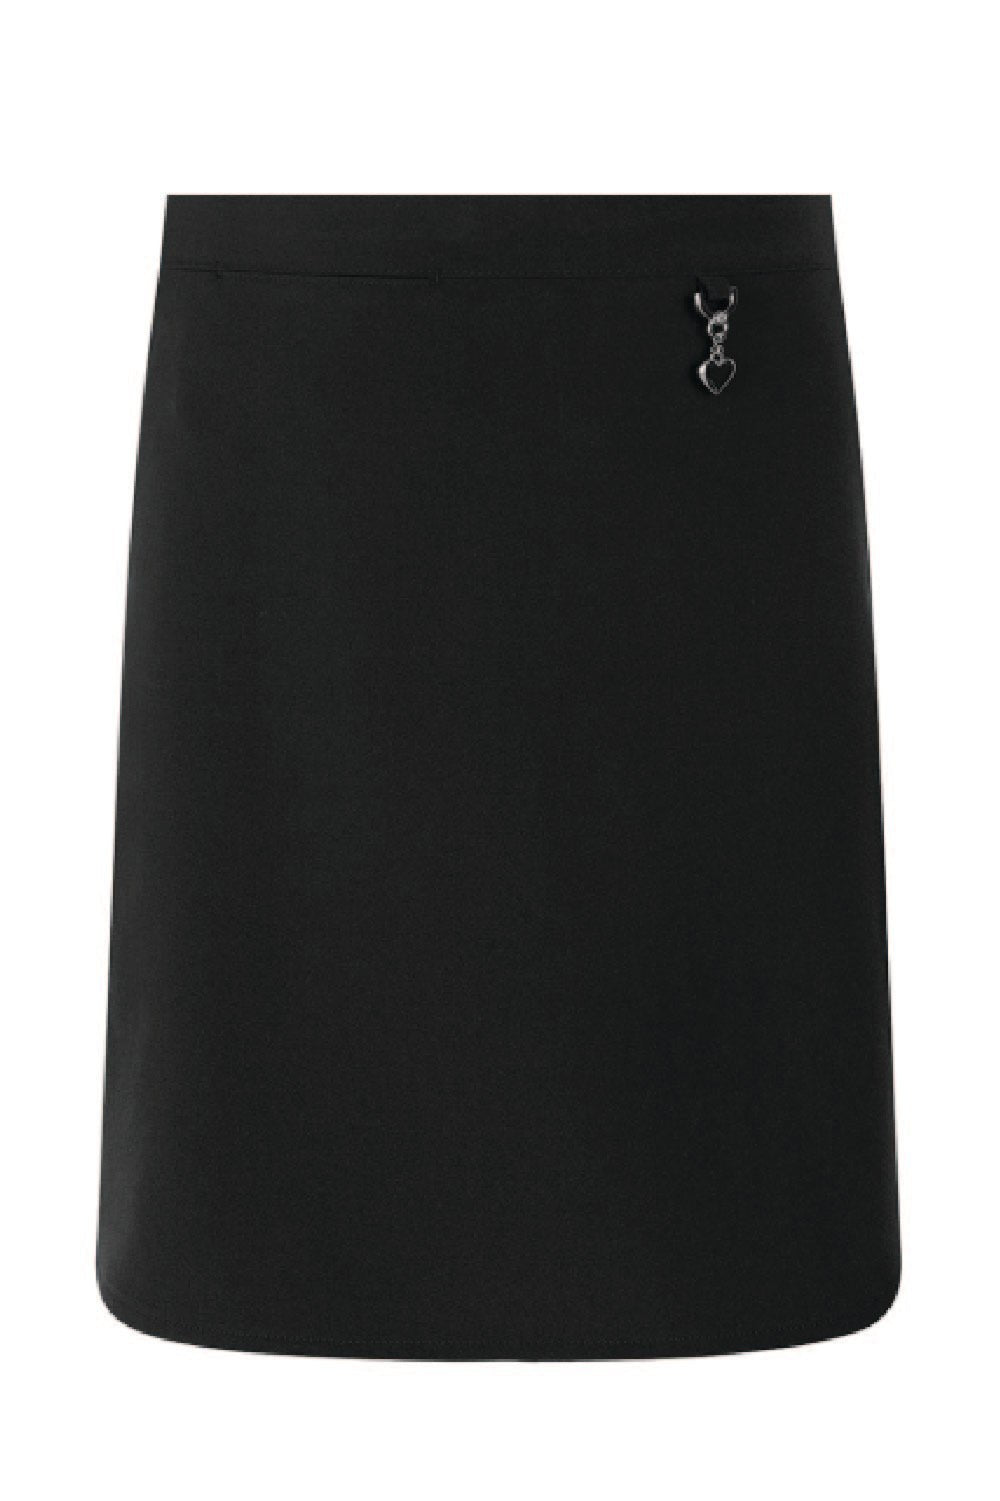 Navy Heart Skirt - Uniformwise Schoolwear